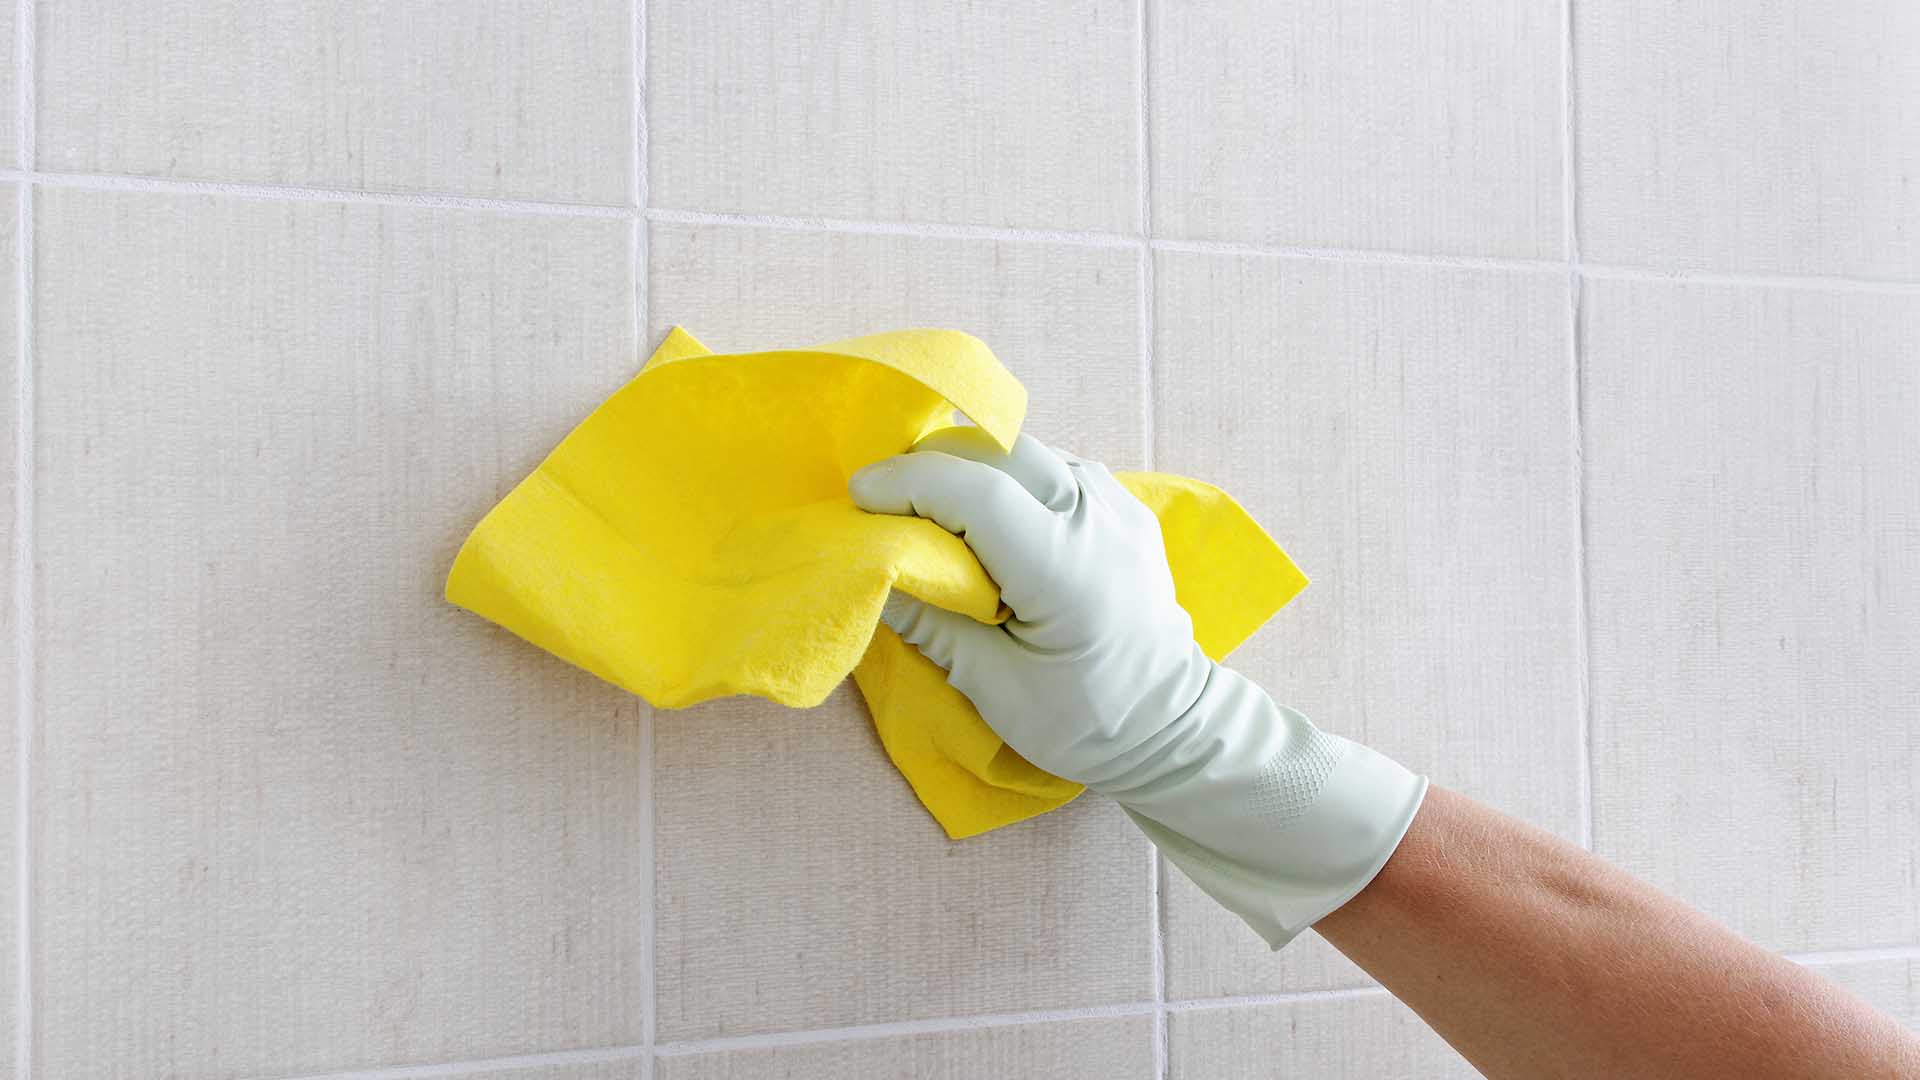 https://papelmatic.com/wp-content/uploads/2022/03/papelmatic-higiene-profesional-limpieza-paredes-y-techos.jpg